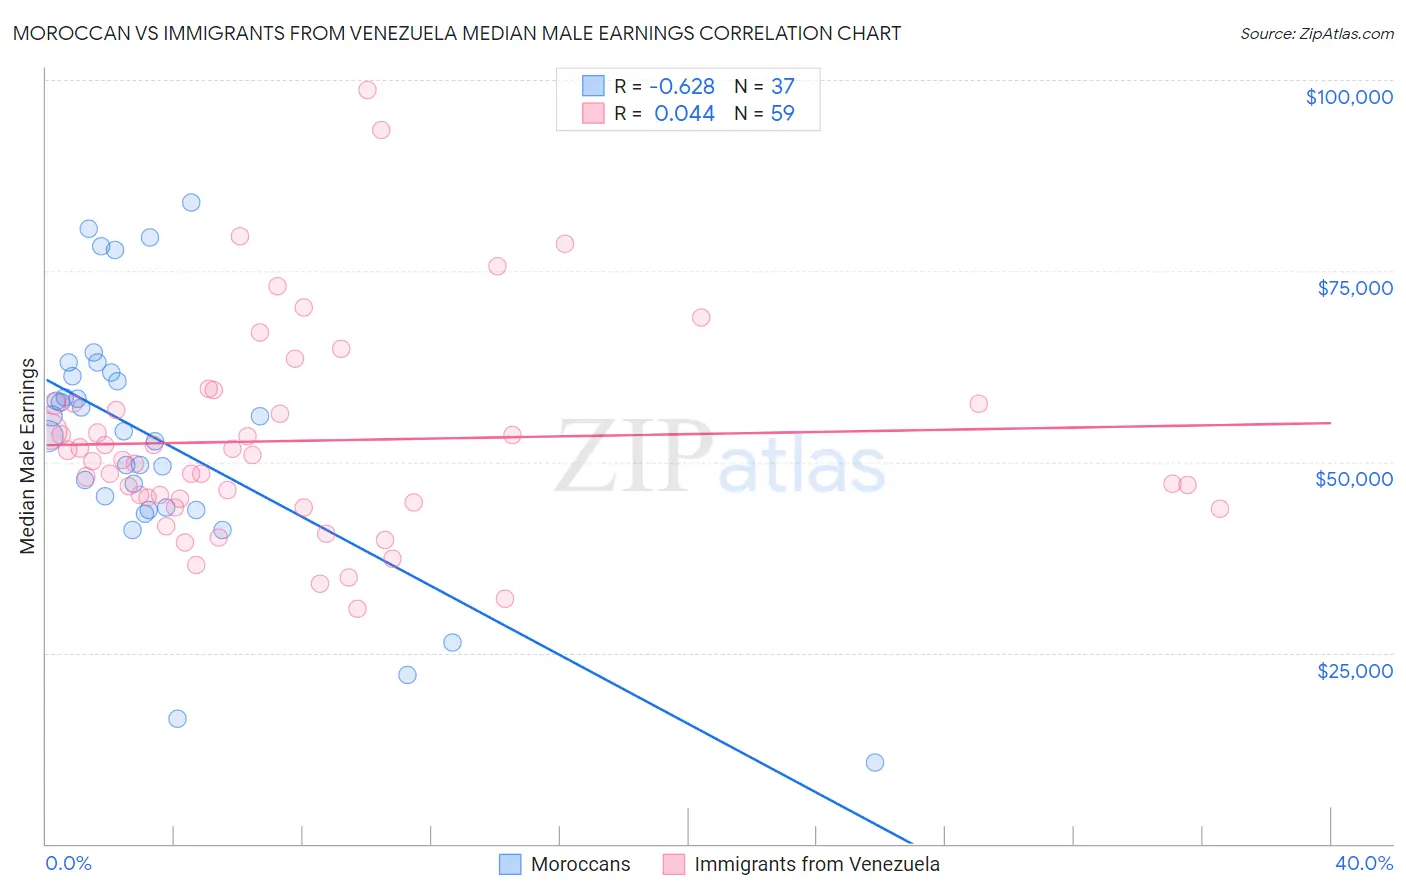 Moroccan vs Immigrants from Venezuela Median Male Earnings